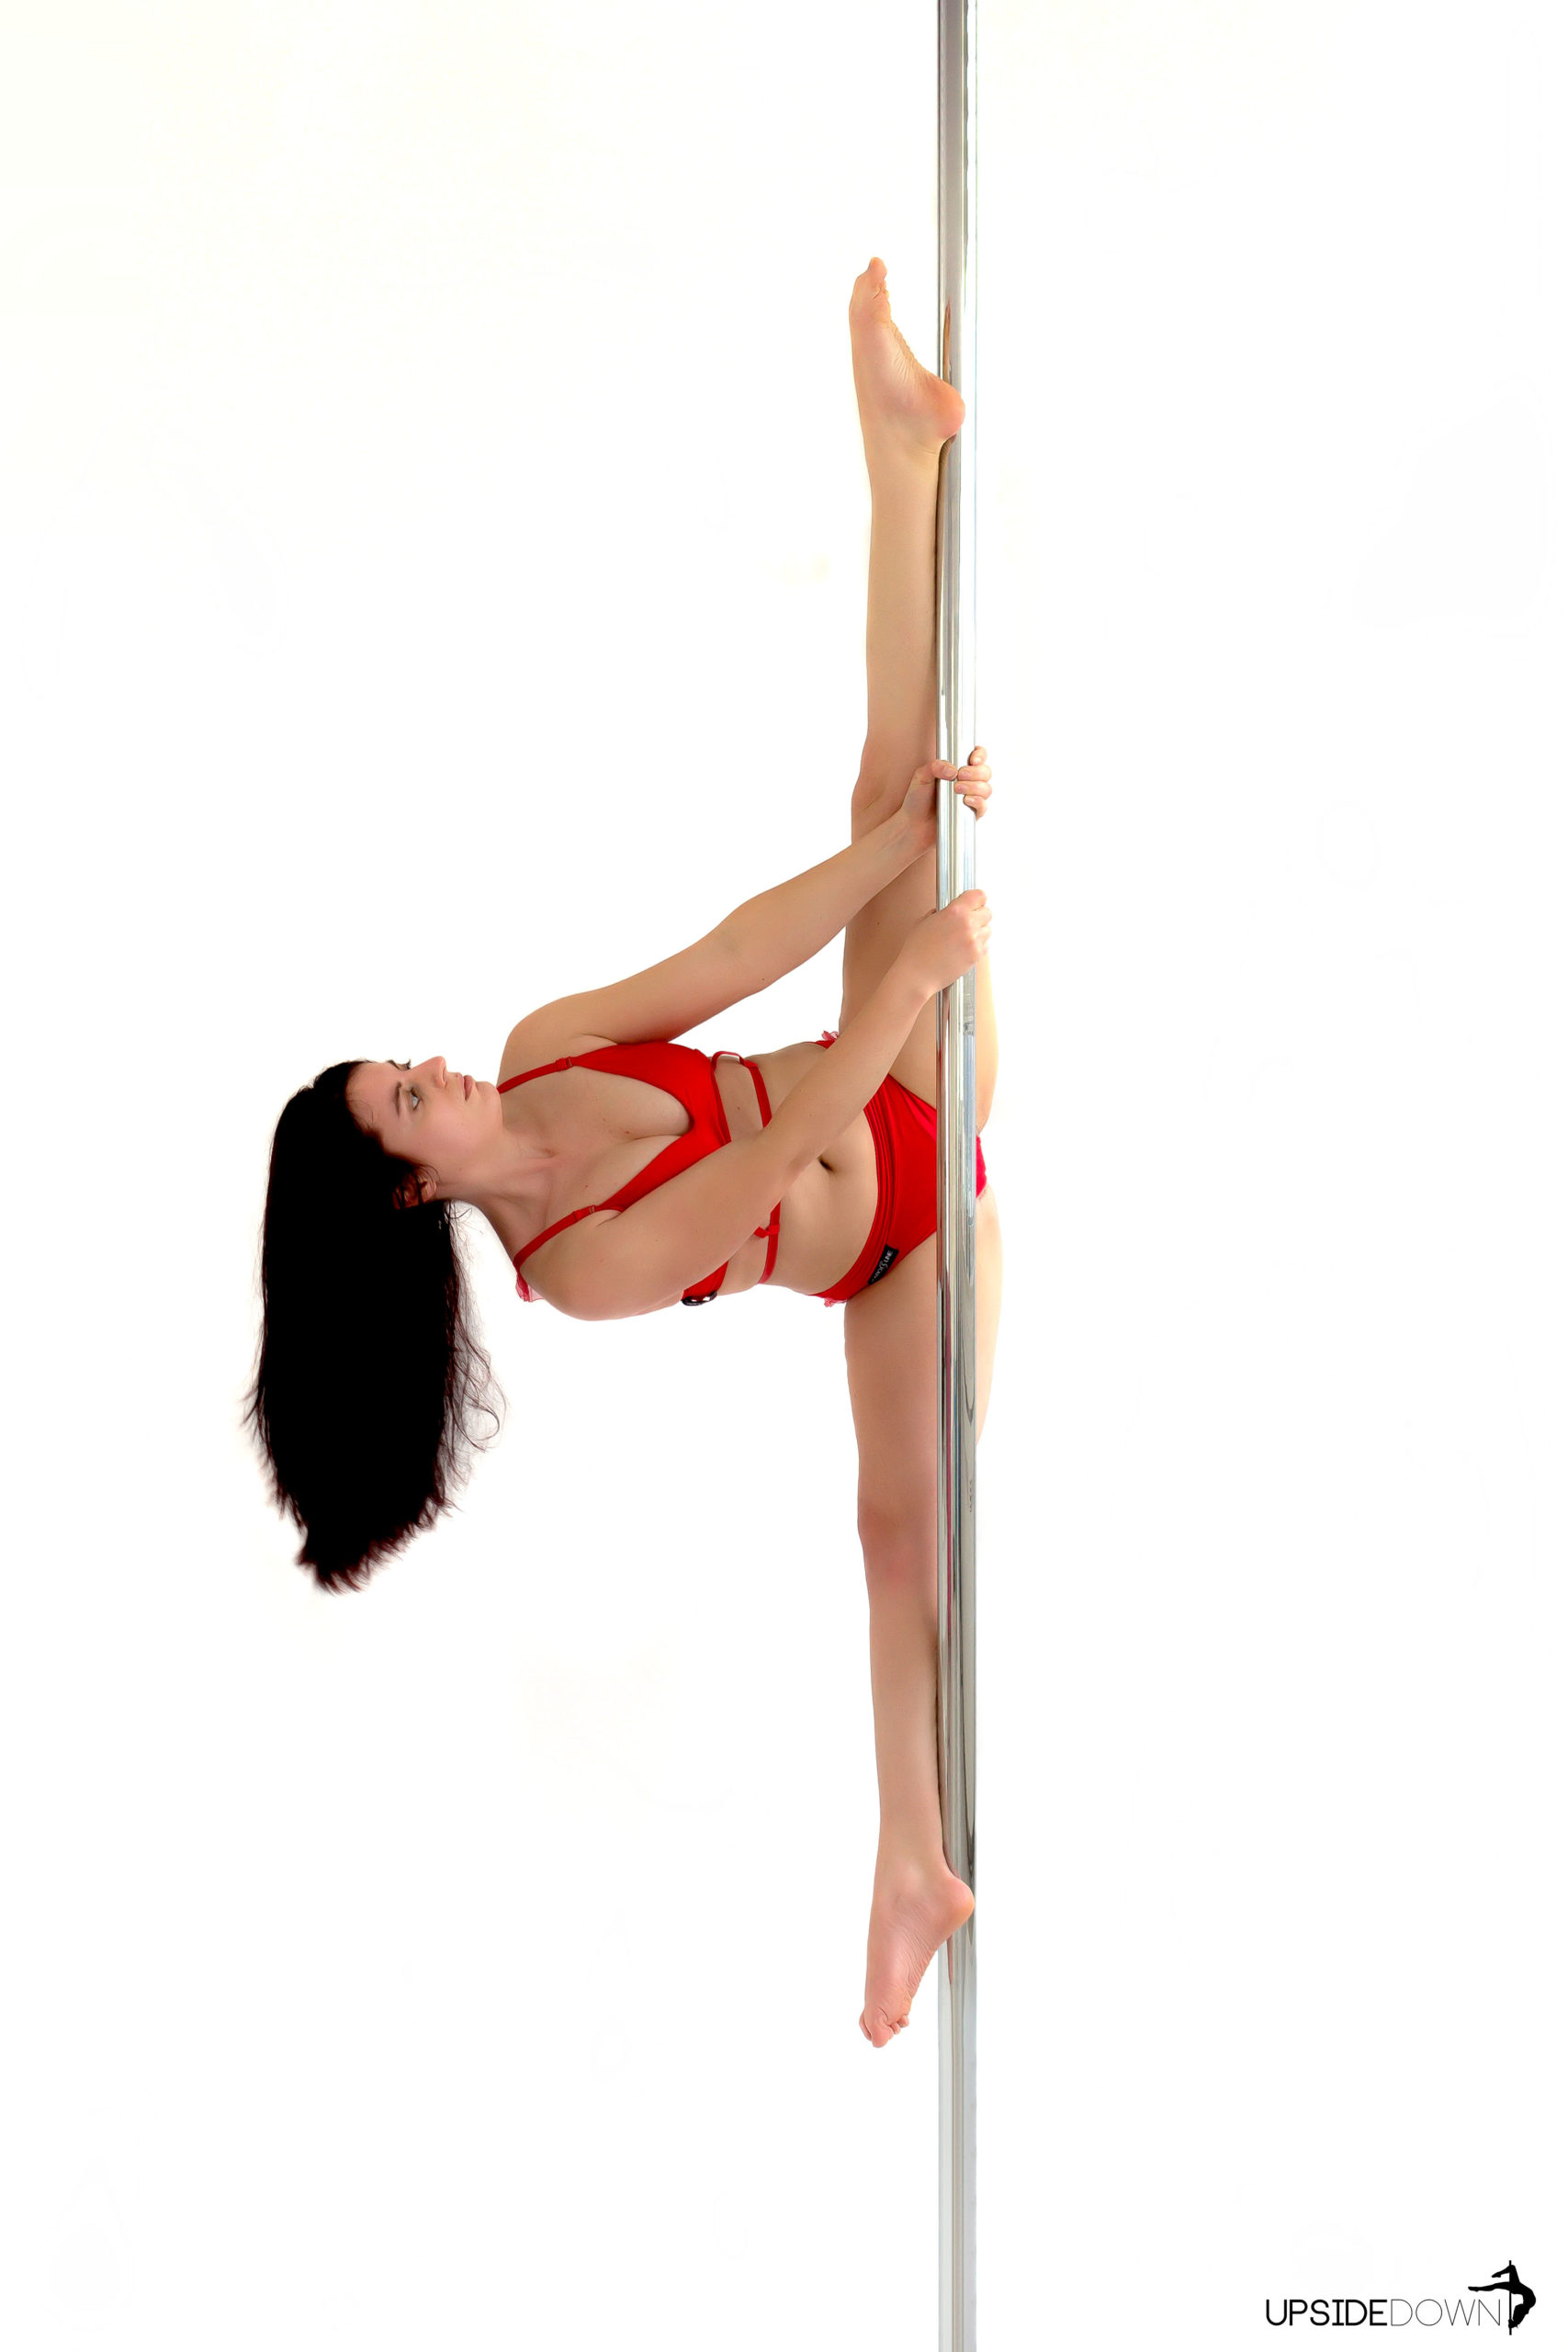 Susi (Trainerin im UpsideDown Studio Bad Homburg, nähe Frankfurt) macht die Figur Brassmonkey an der Stange (Pole).